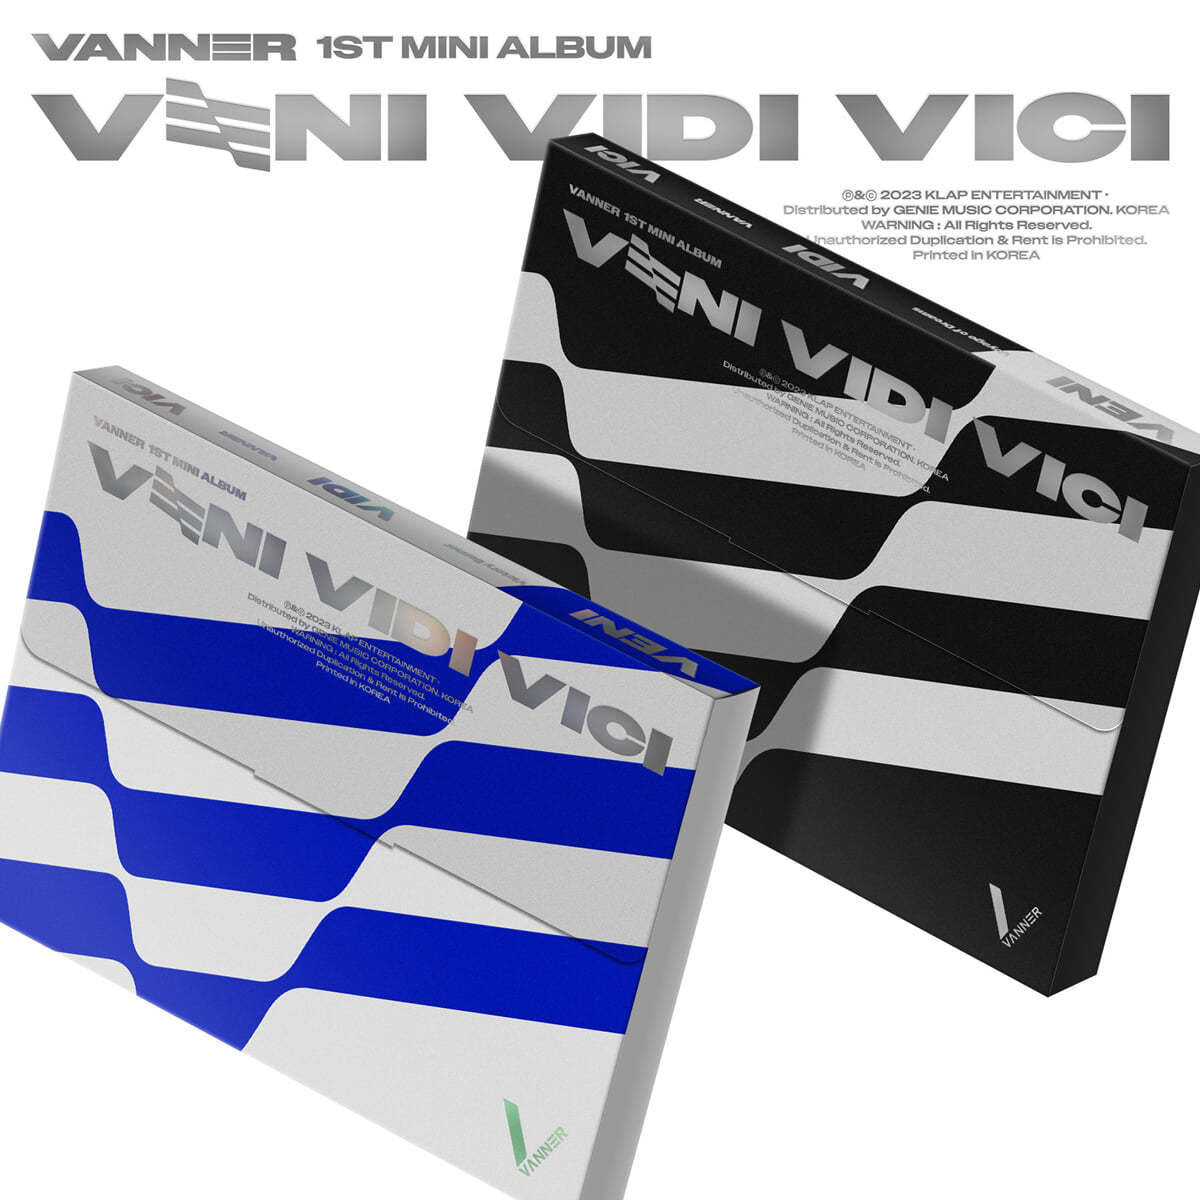 VANNER - VENI VIDI VICI (Random Ver.)